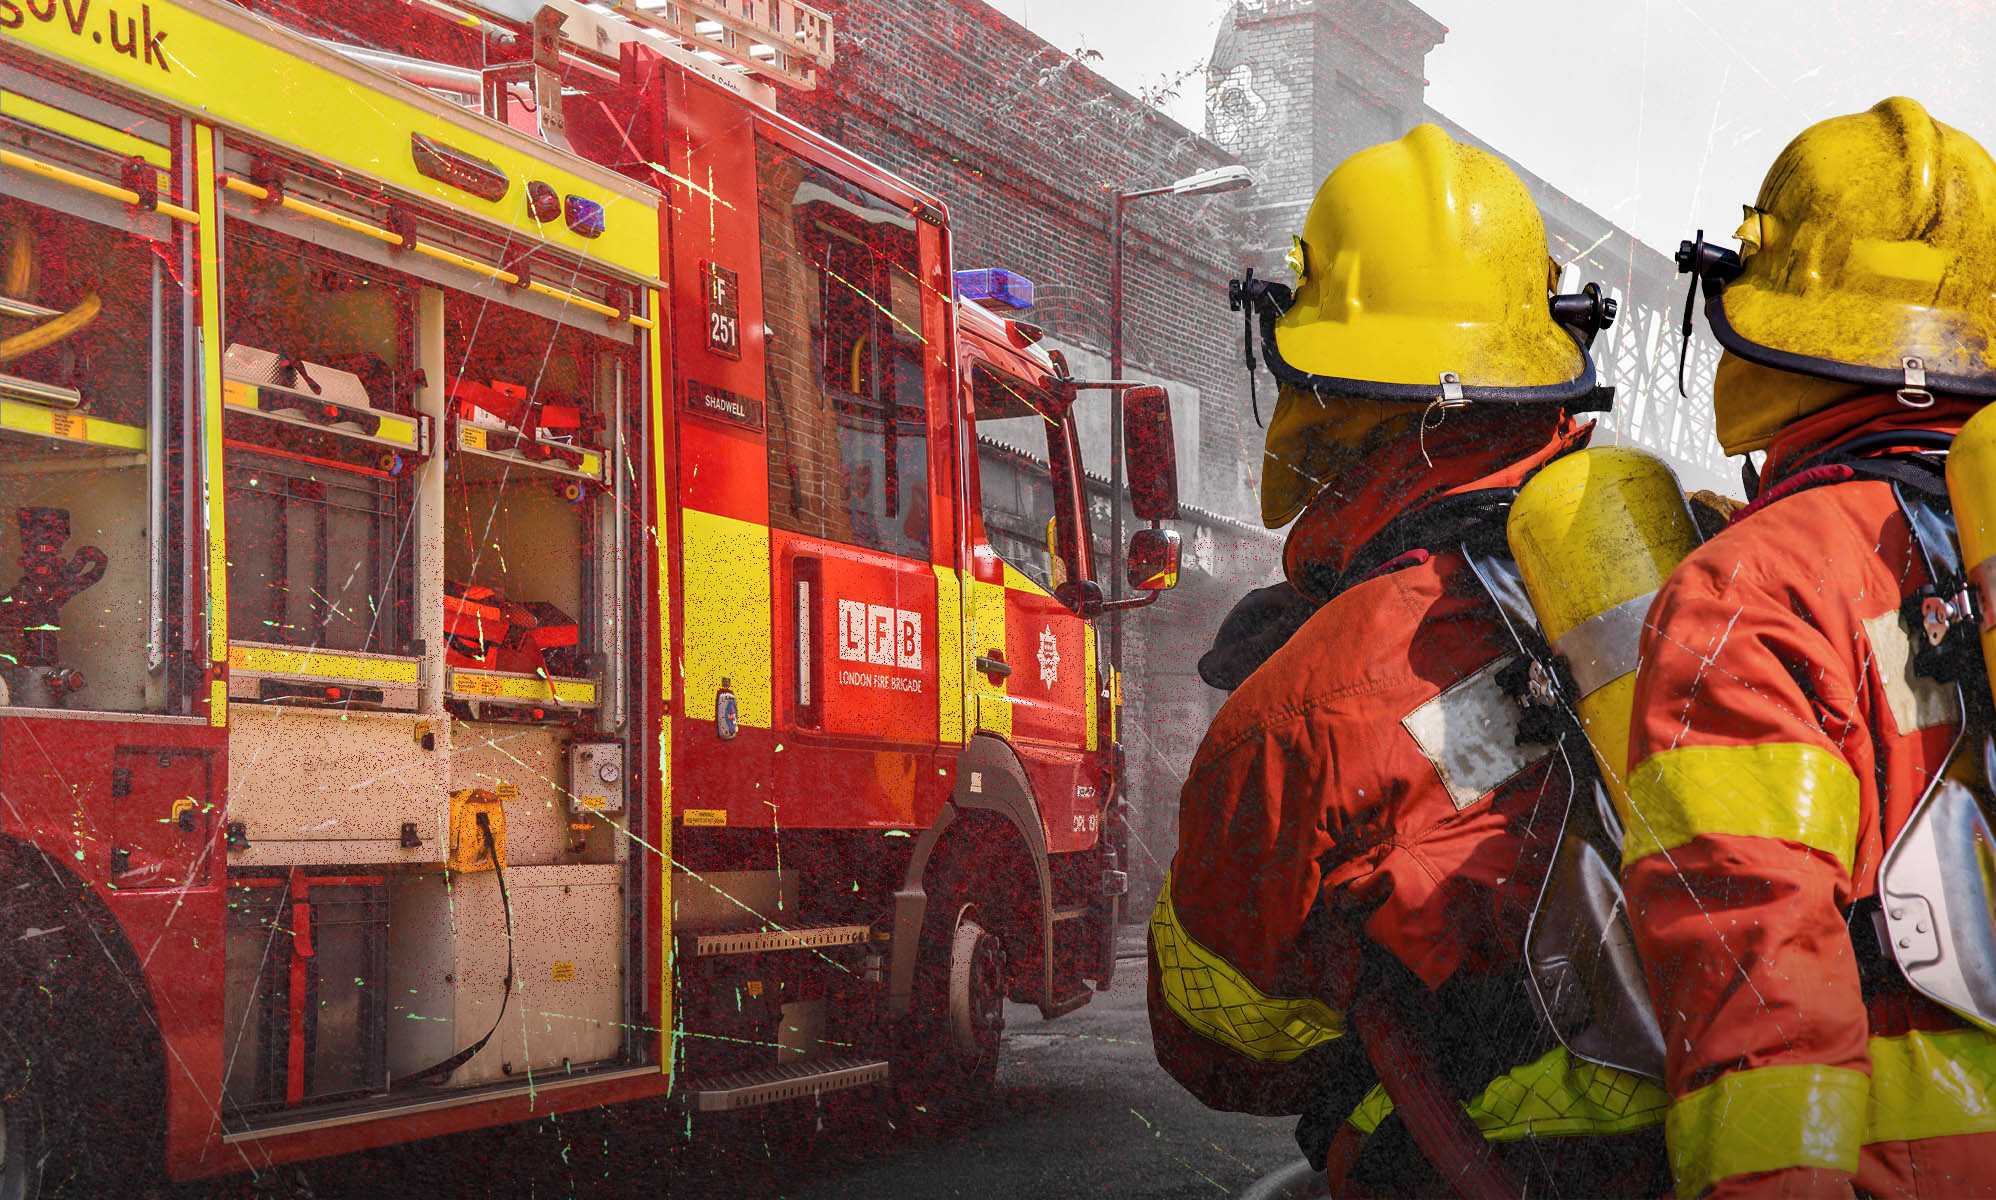 El servicio de bomberos de Inglaterra es "institucionalmente homófobo, racista y misógino", según los diputados